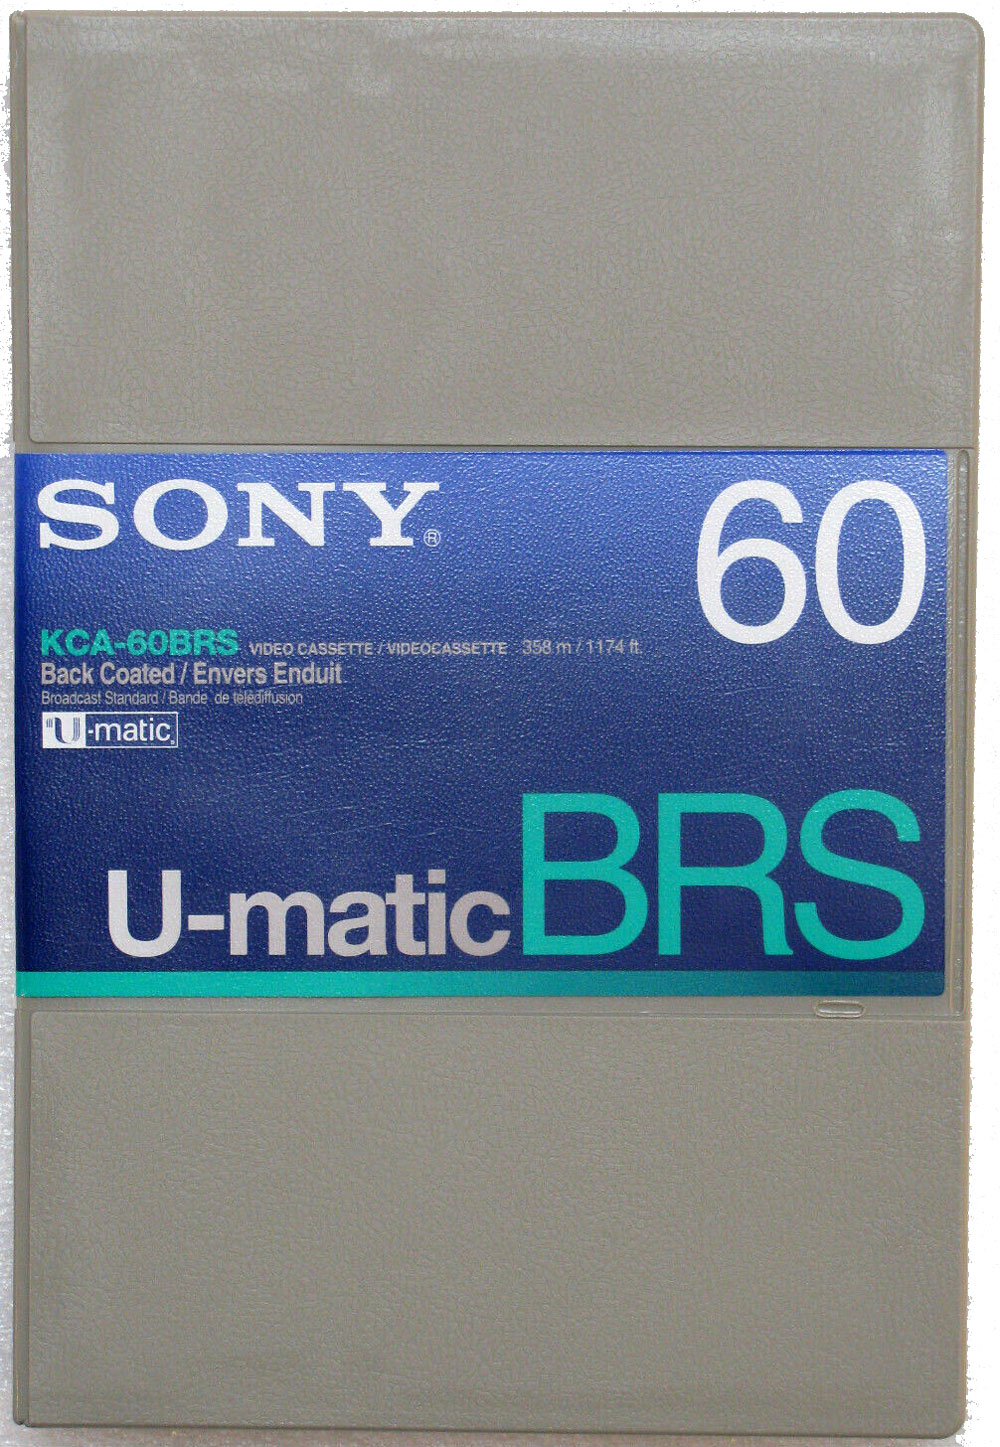 Nastri digitalizzazione archivi video televisivi, ¾" U-matic ¾" SP (U-matic SP) 